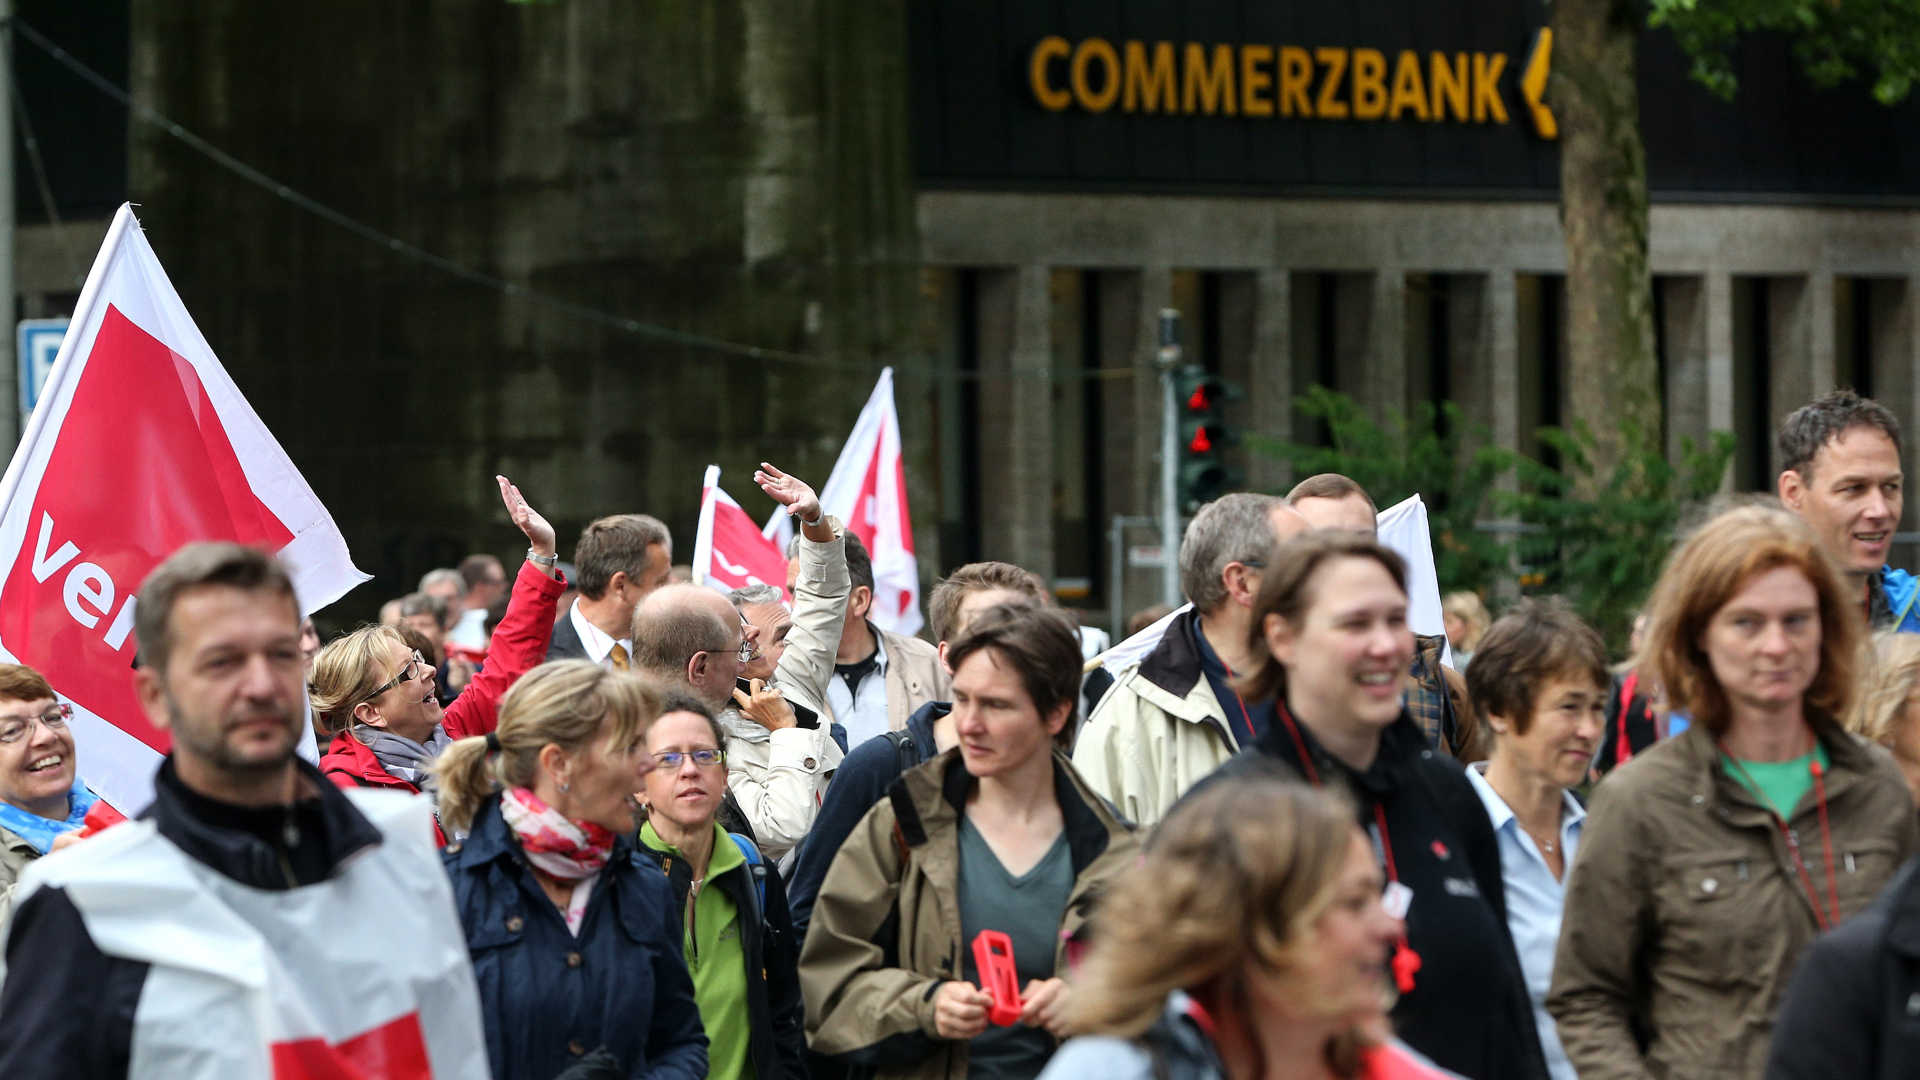 Teilnehmer einer Verdi-Kundgebung im Jahr 2014. | Foto: picture alliance / dpa | Axel Heimken